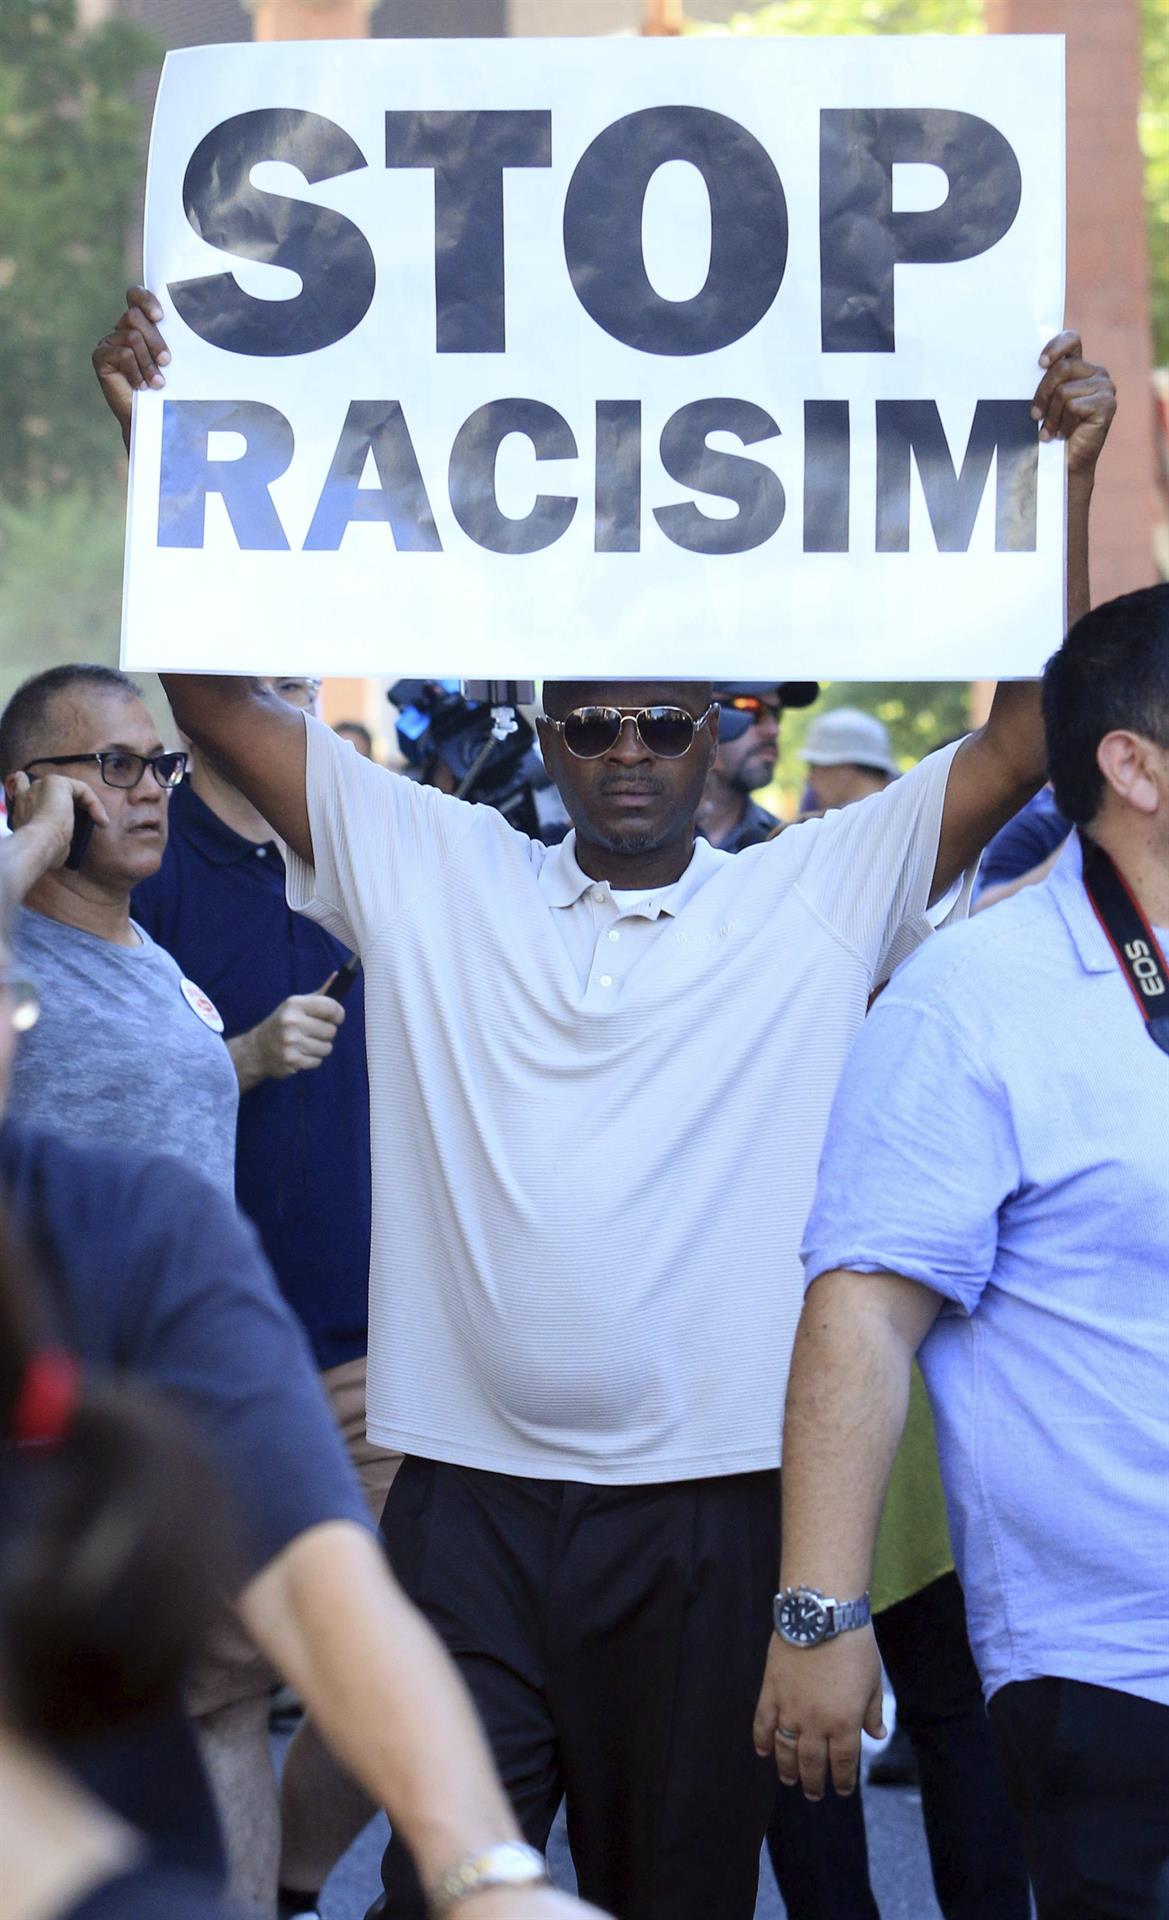 Vista de una manifestación en contra del racismo. Imagen de archivo. EFE/Roy Dabner
